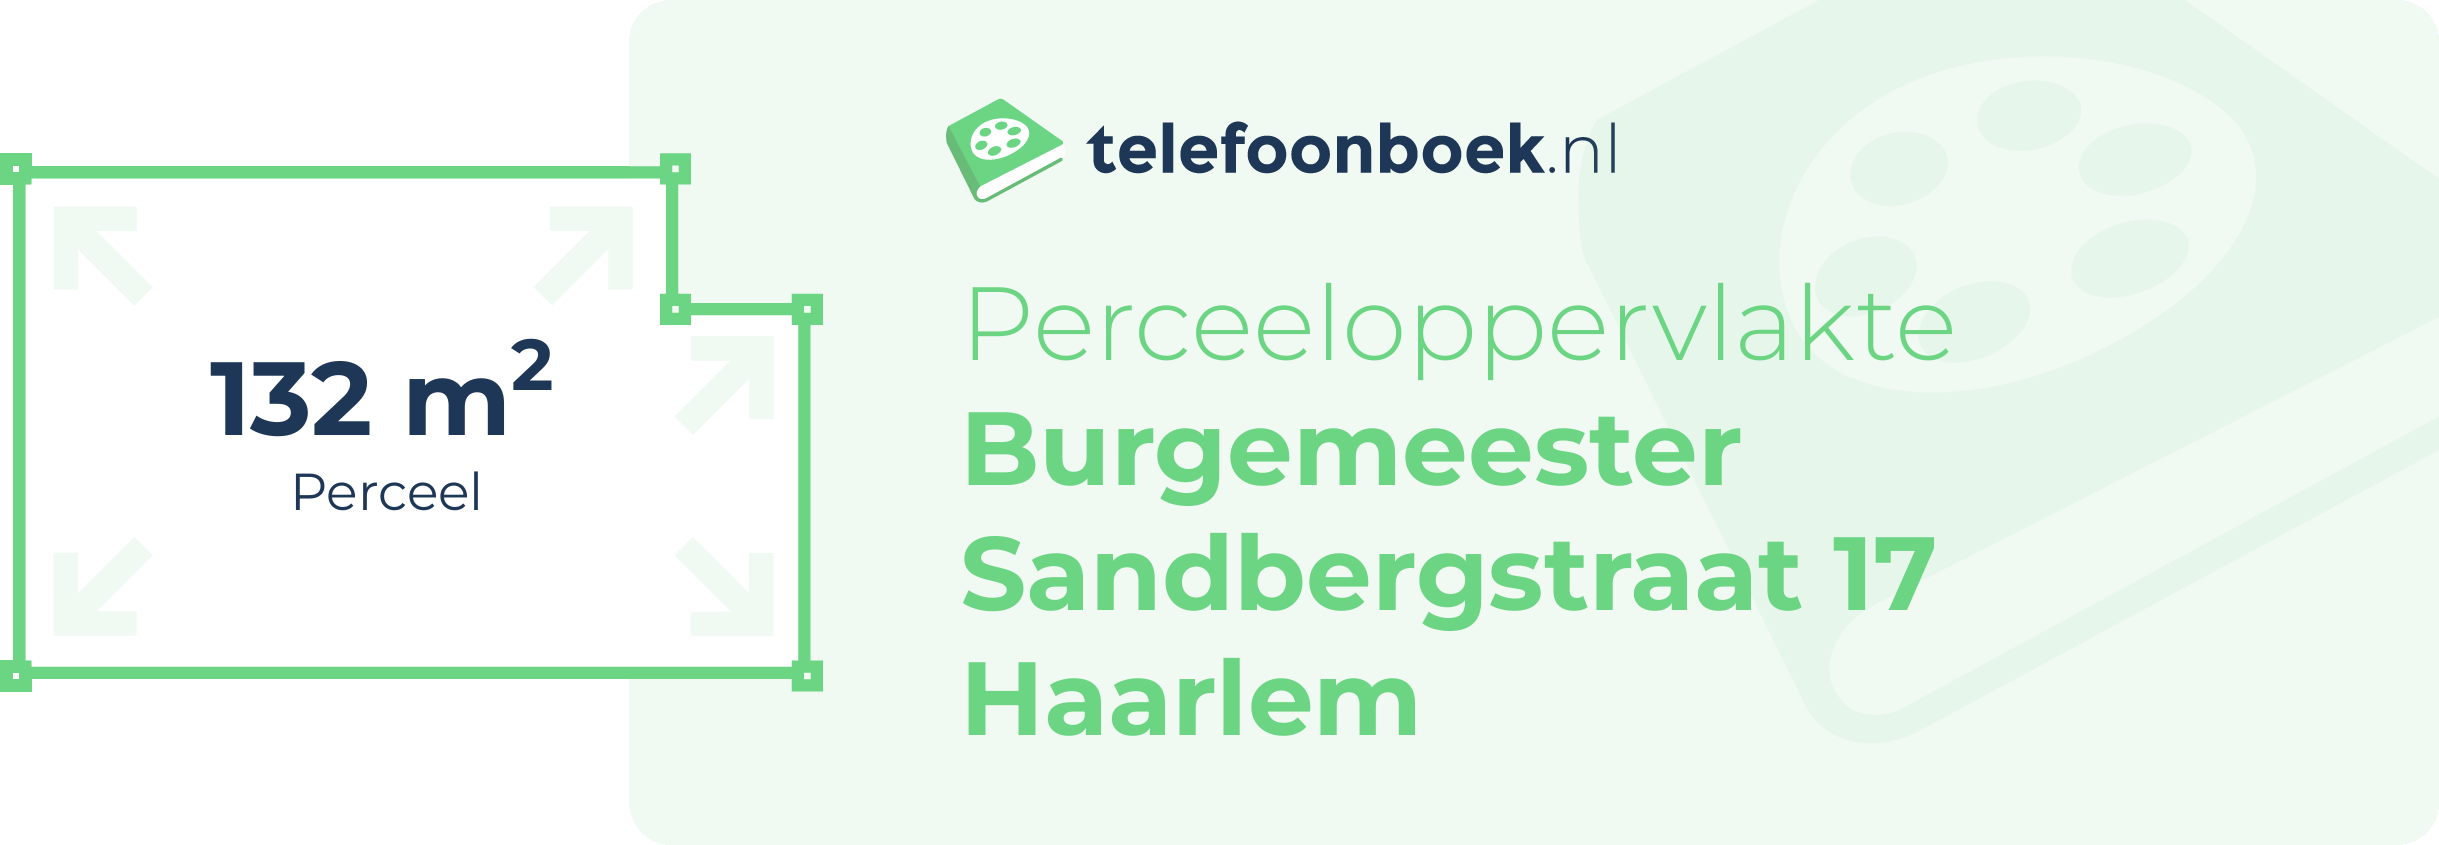 Perceeloppervlakte Burgemeester Sandbergstraat 17 Haarlem